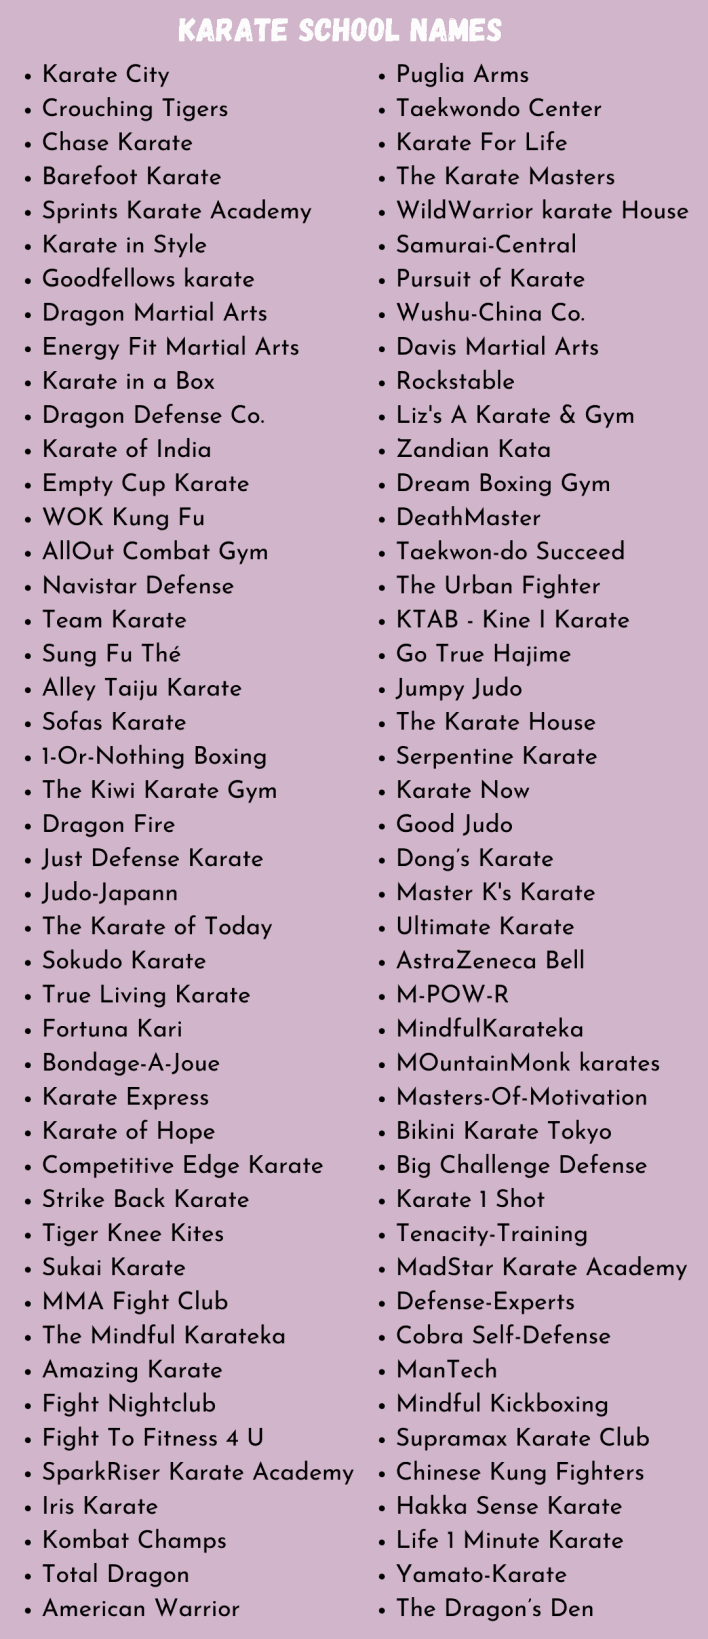 Karate School Names